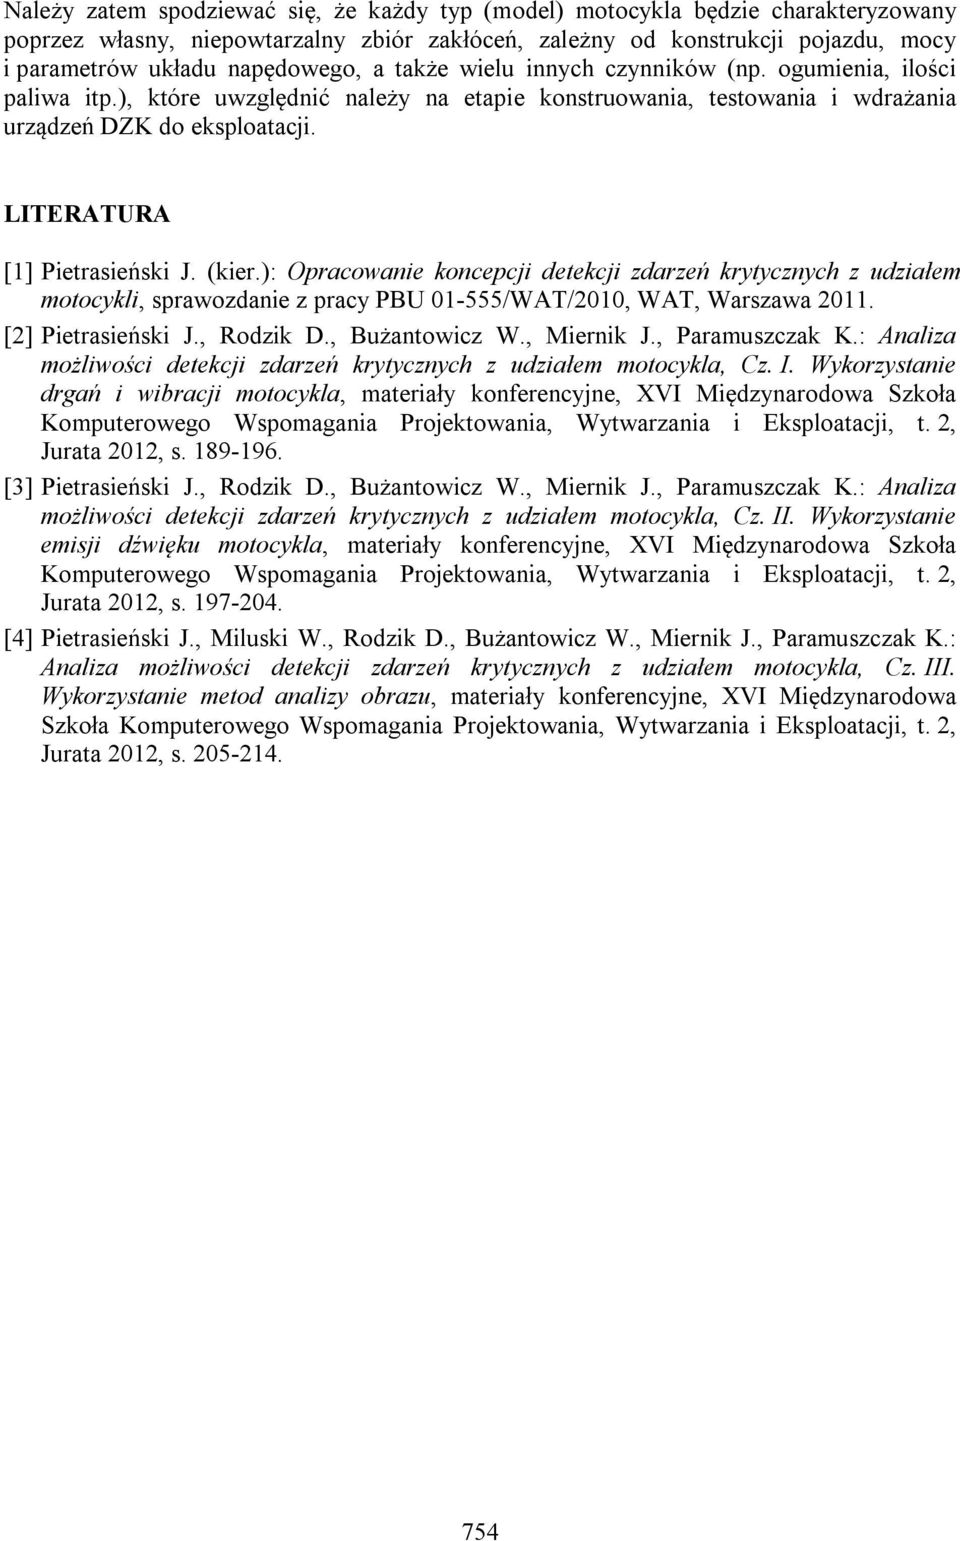 LITERATURA [1] Pietrasieński J. (kier.): Opracowanie koncepcji detekcji zdarzeń krytycznych z udziałem motocykli, sprawozdanie z pracy PBU 01-555/WAT/2010, WAT, Warszawa 2011. [2] Pietrasieński J.